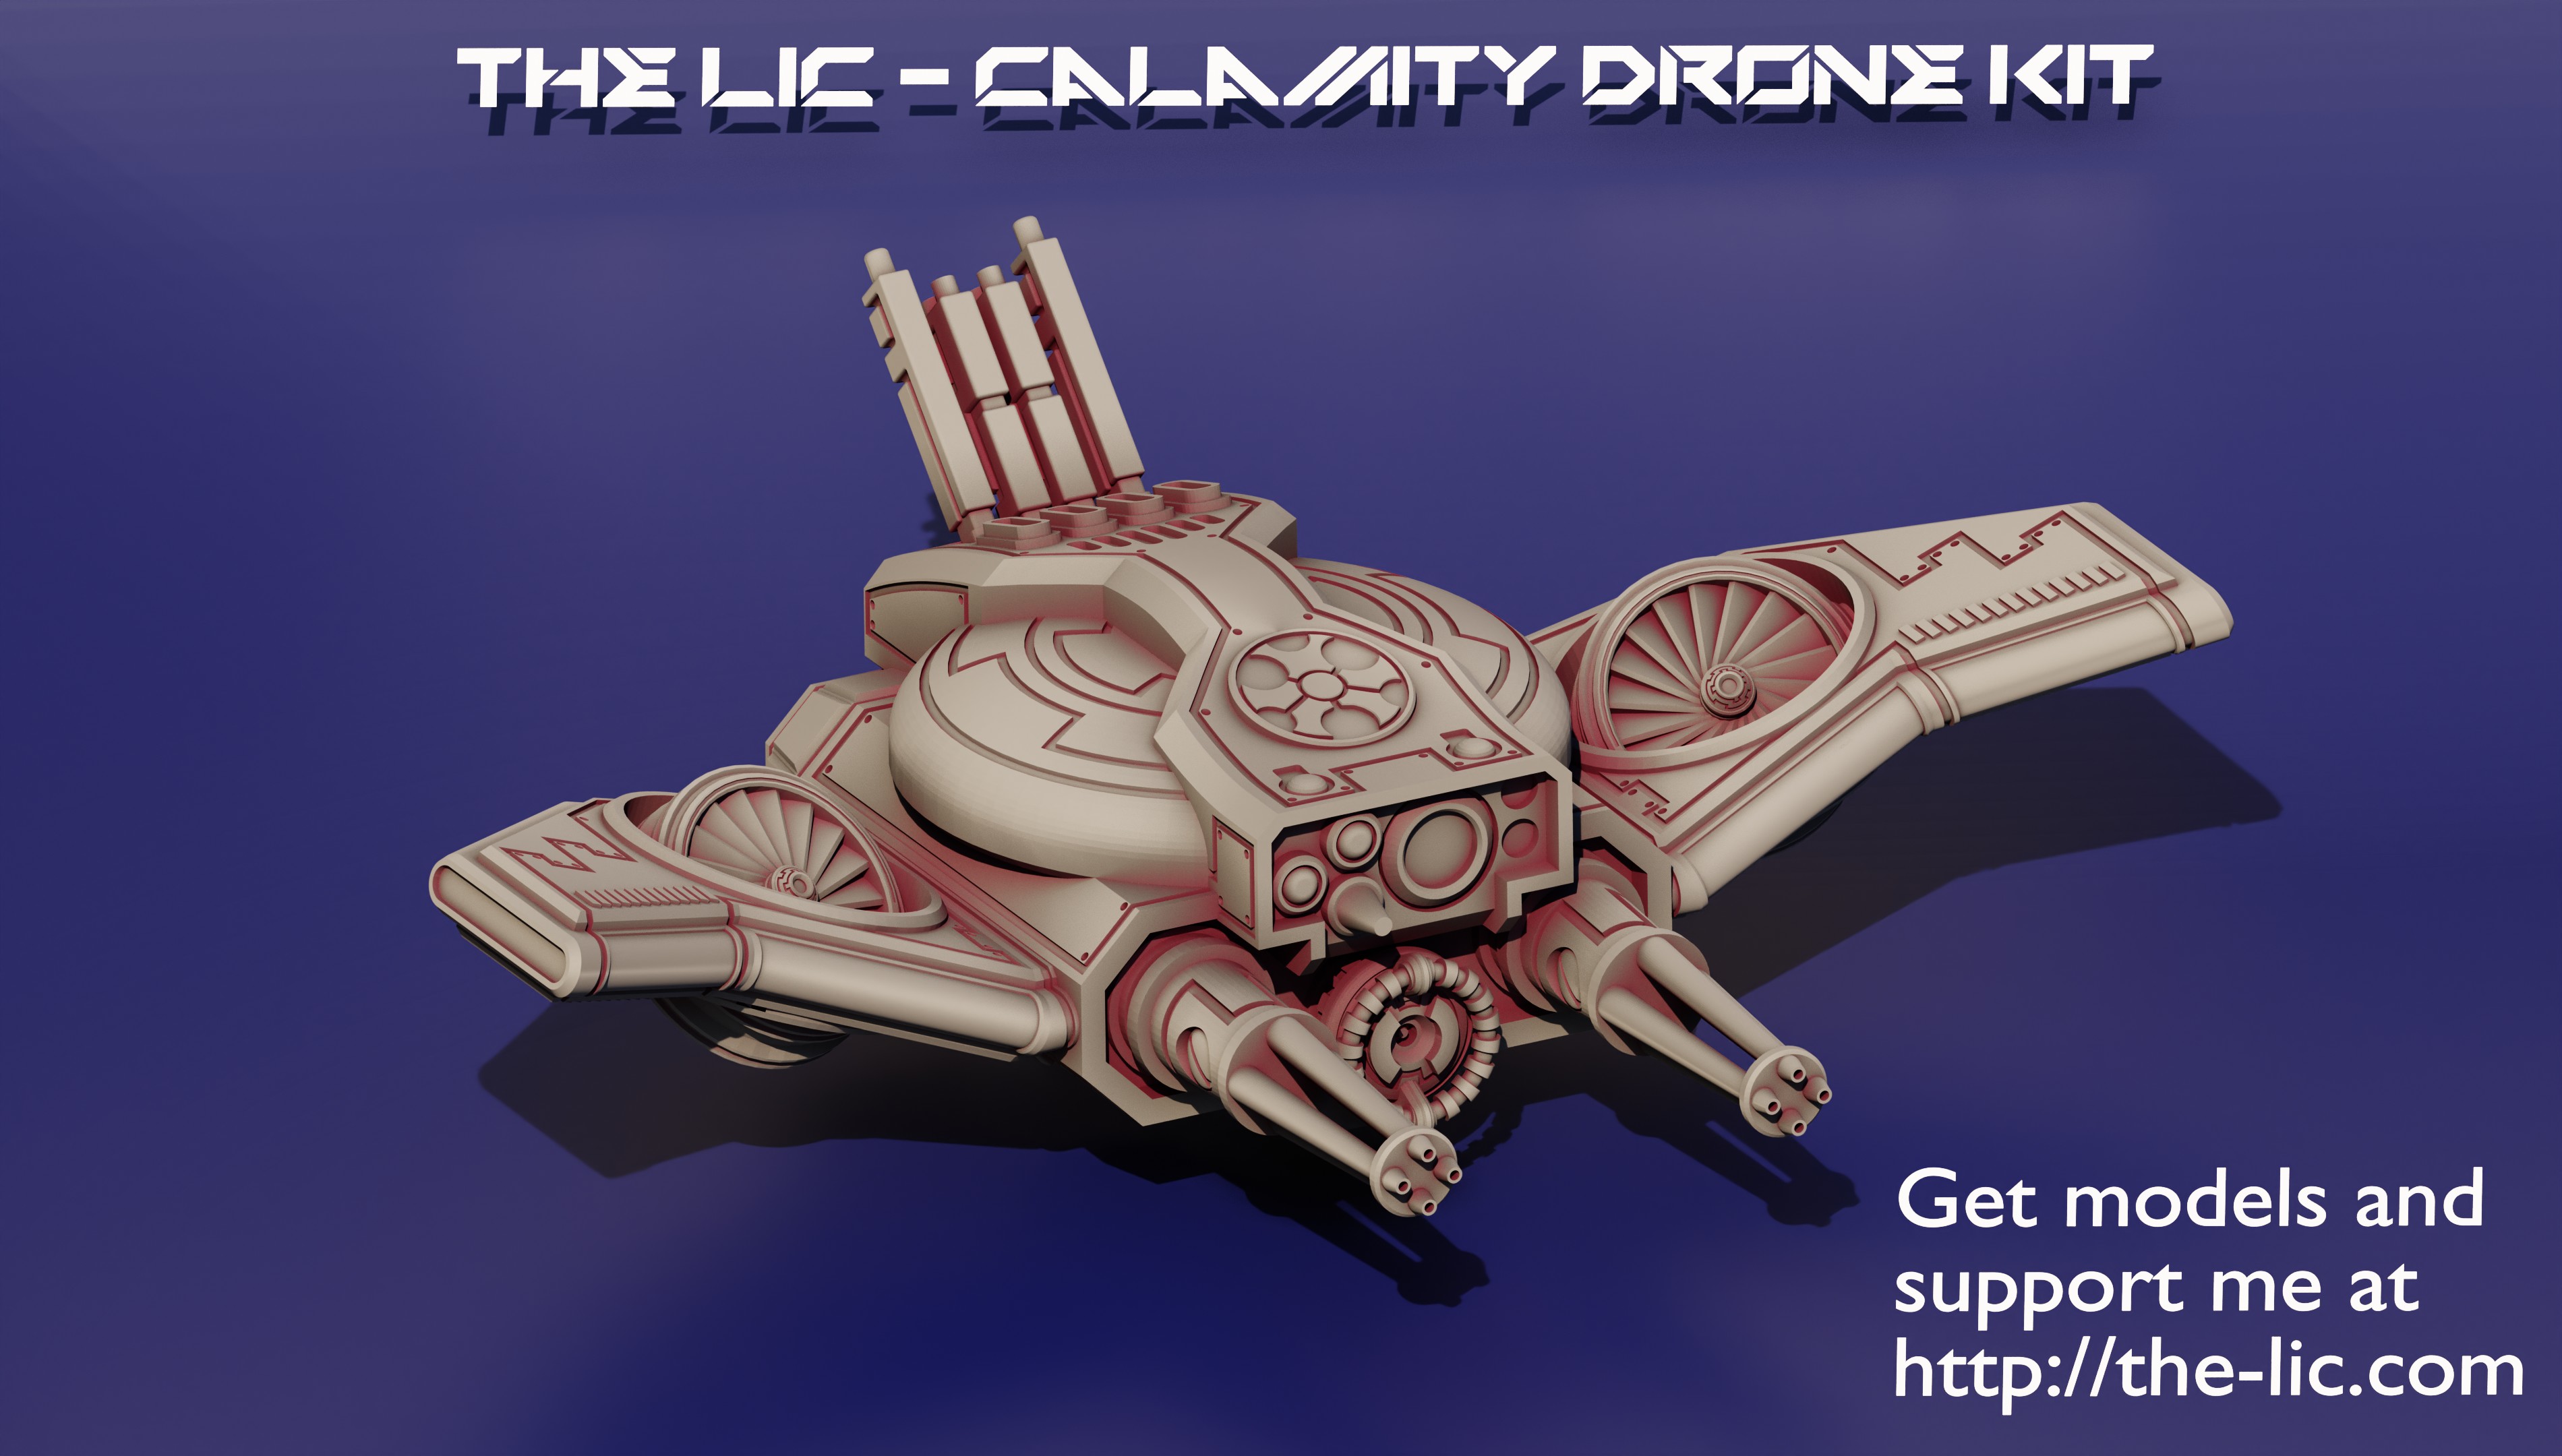 calamitydronew